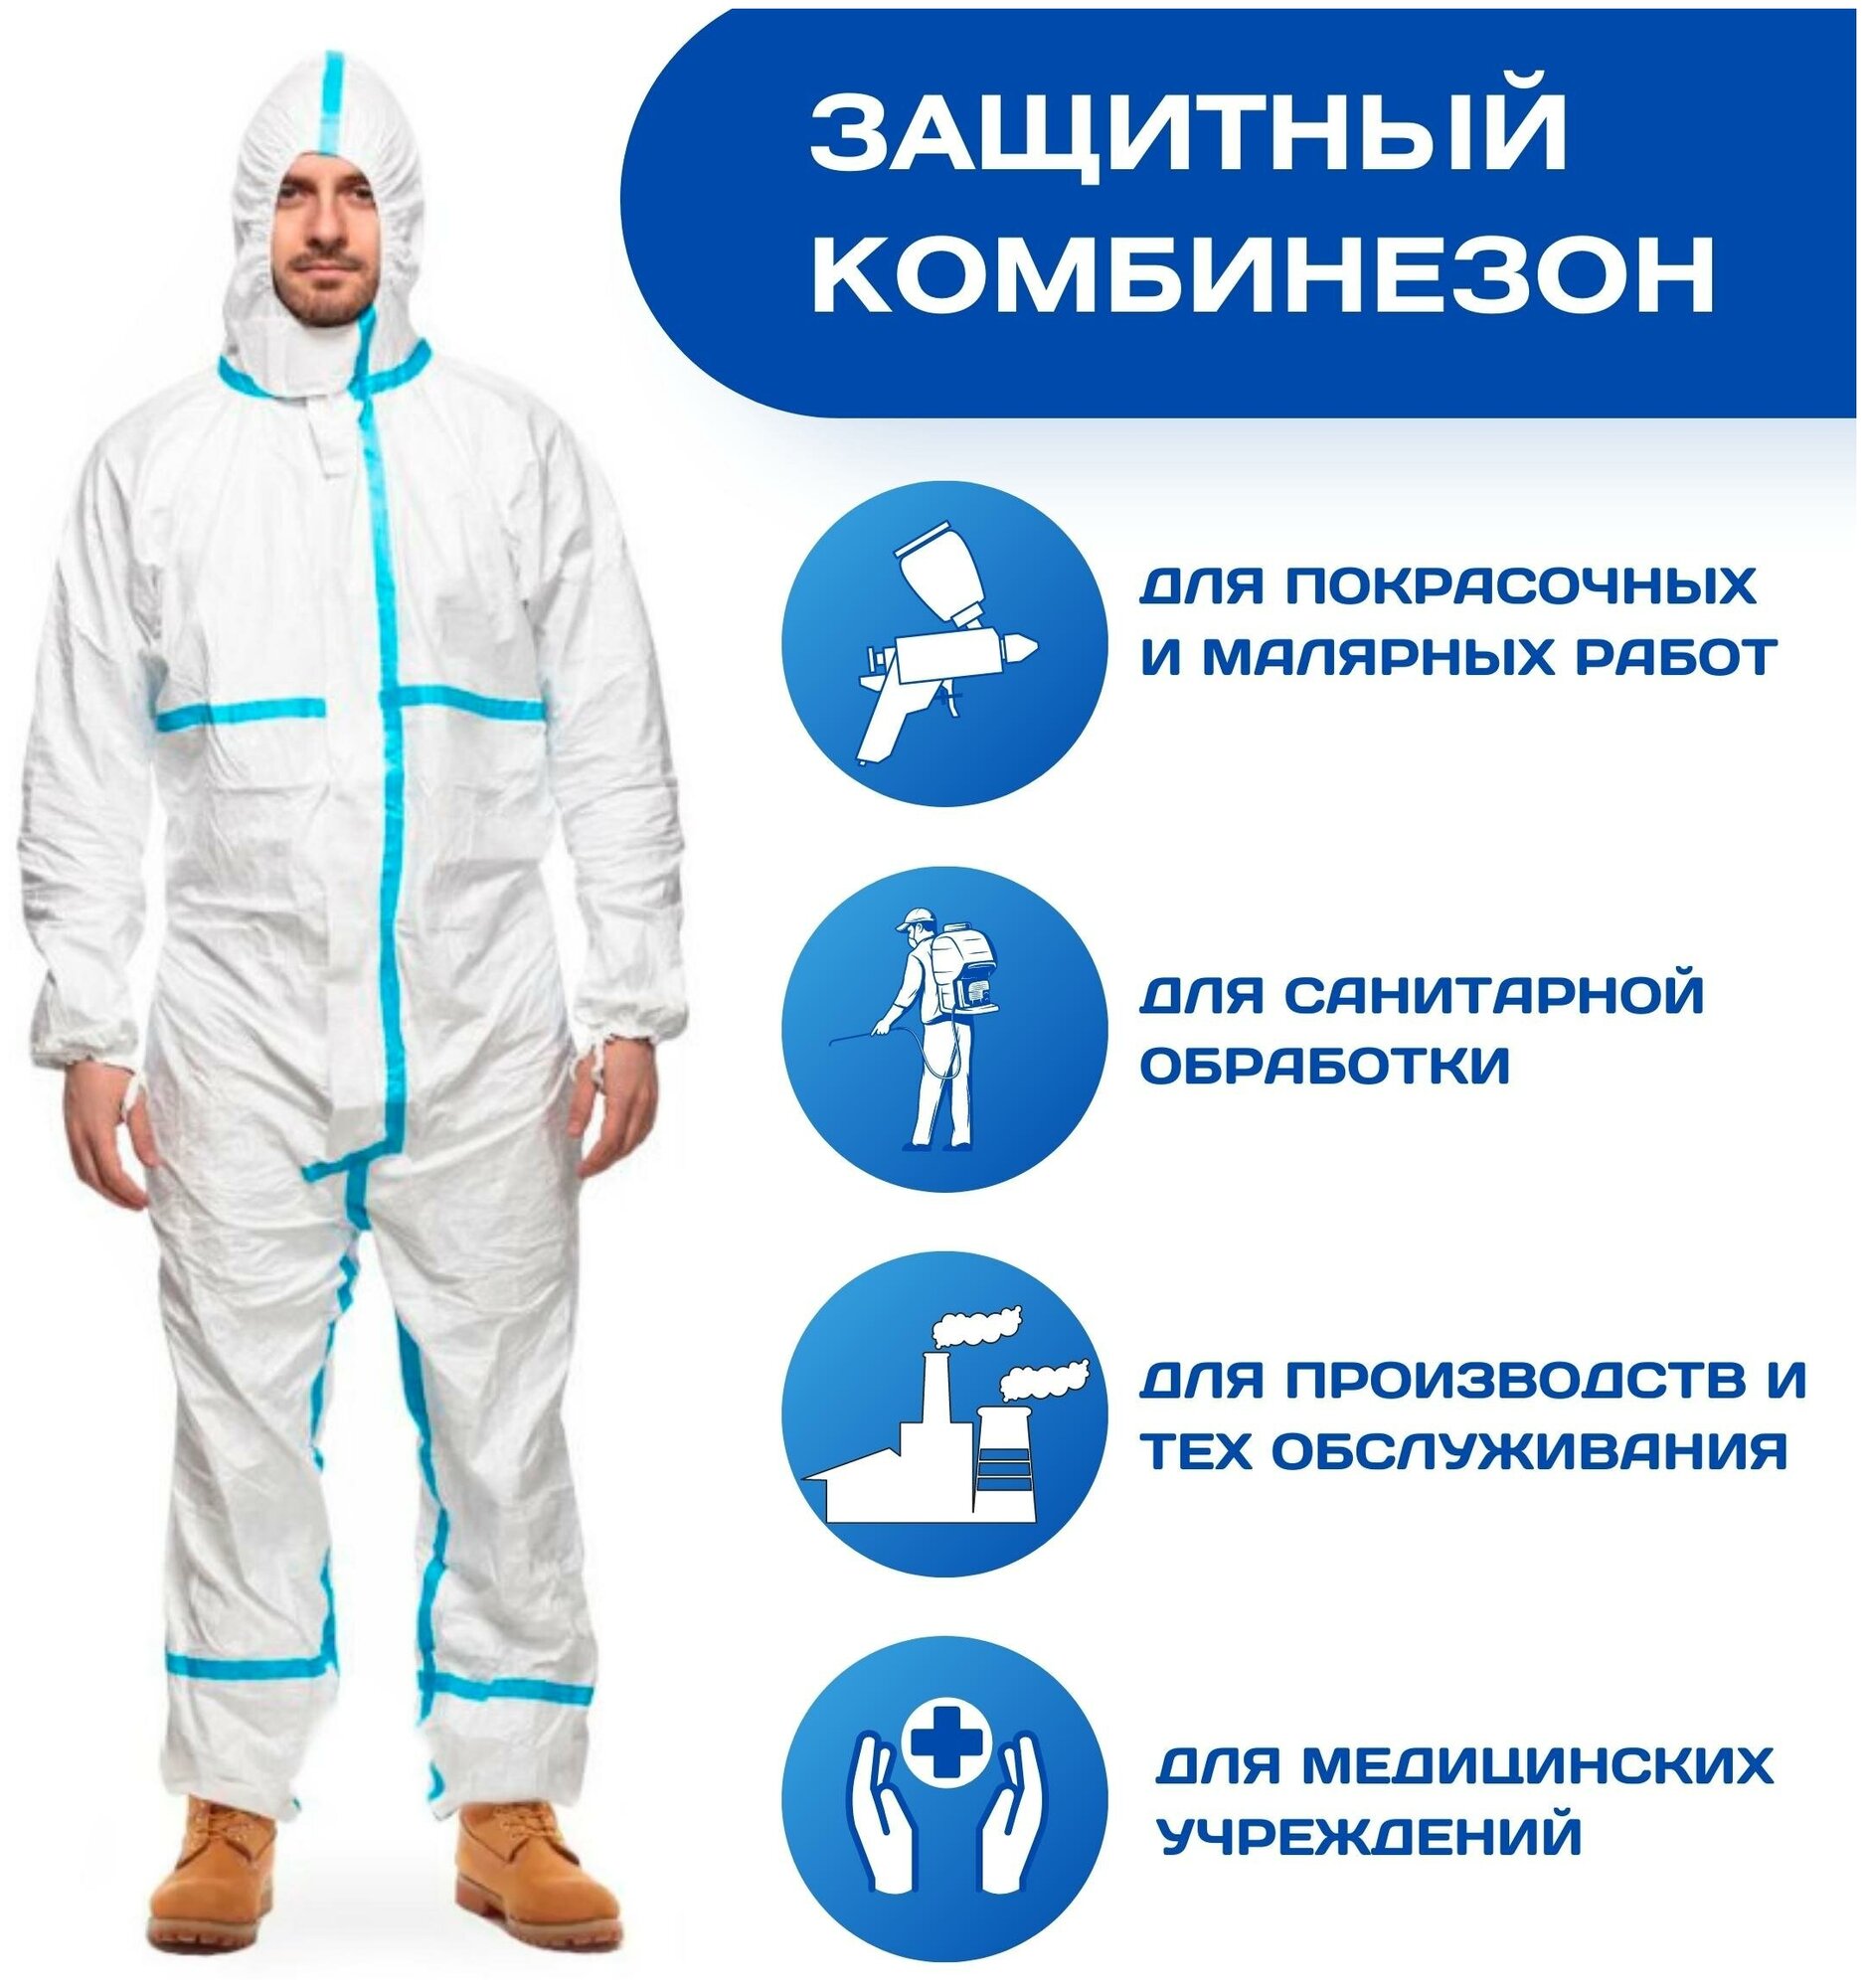 Комбинезон защитный костюм одноразовый плотностью 65 г/м2 ,Комбинезон маляра,костюм медицинский для покраски,для обработки химикатами,спецодежда